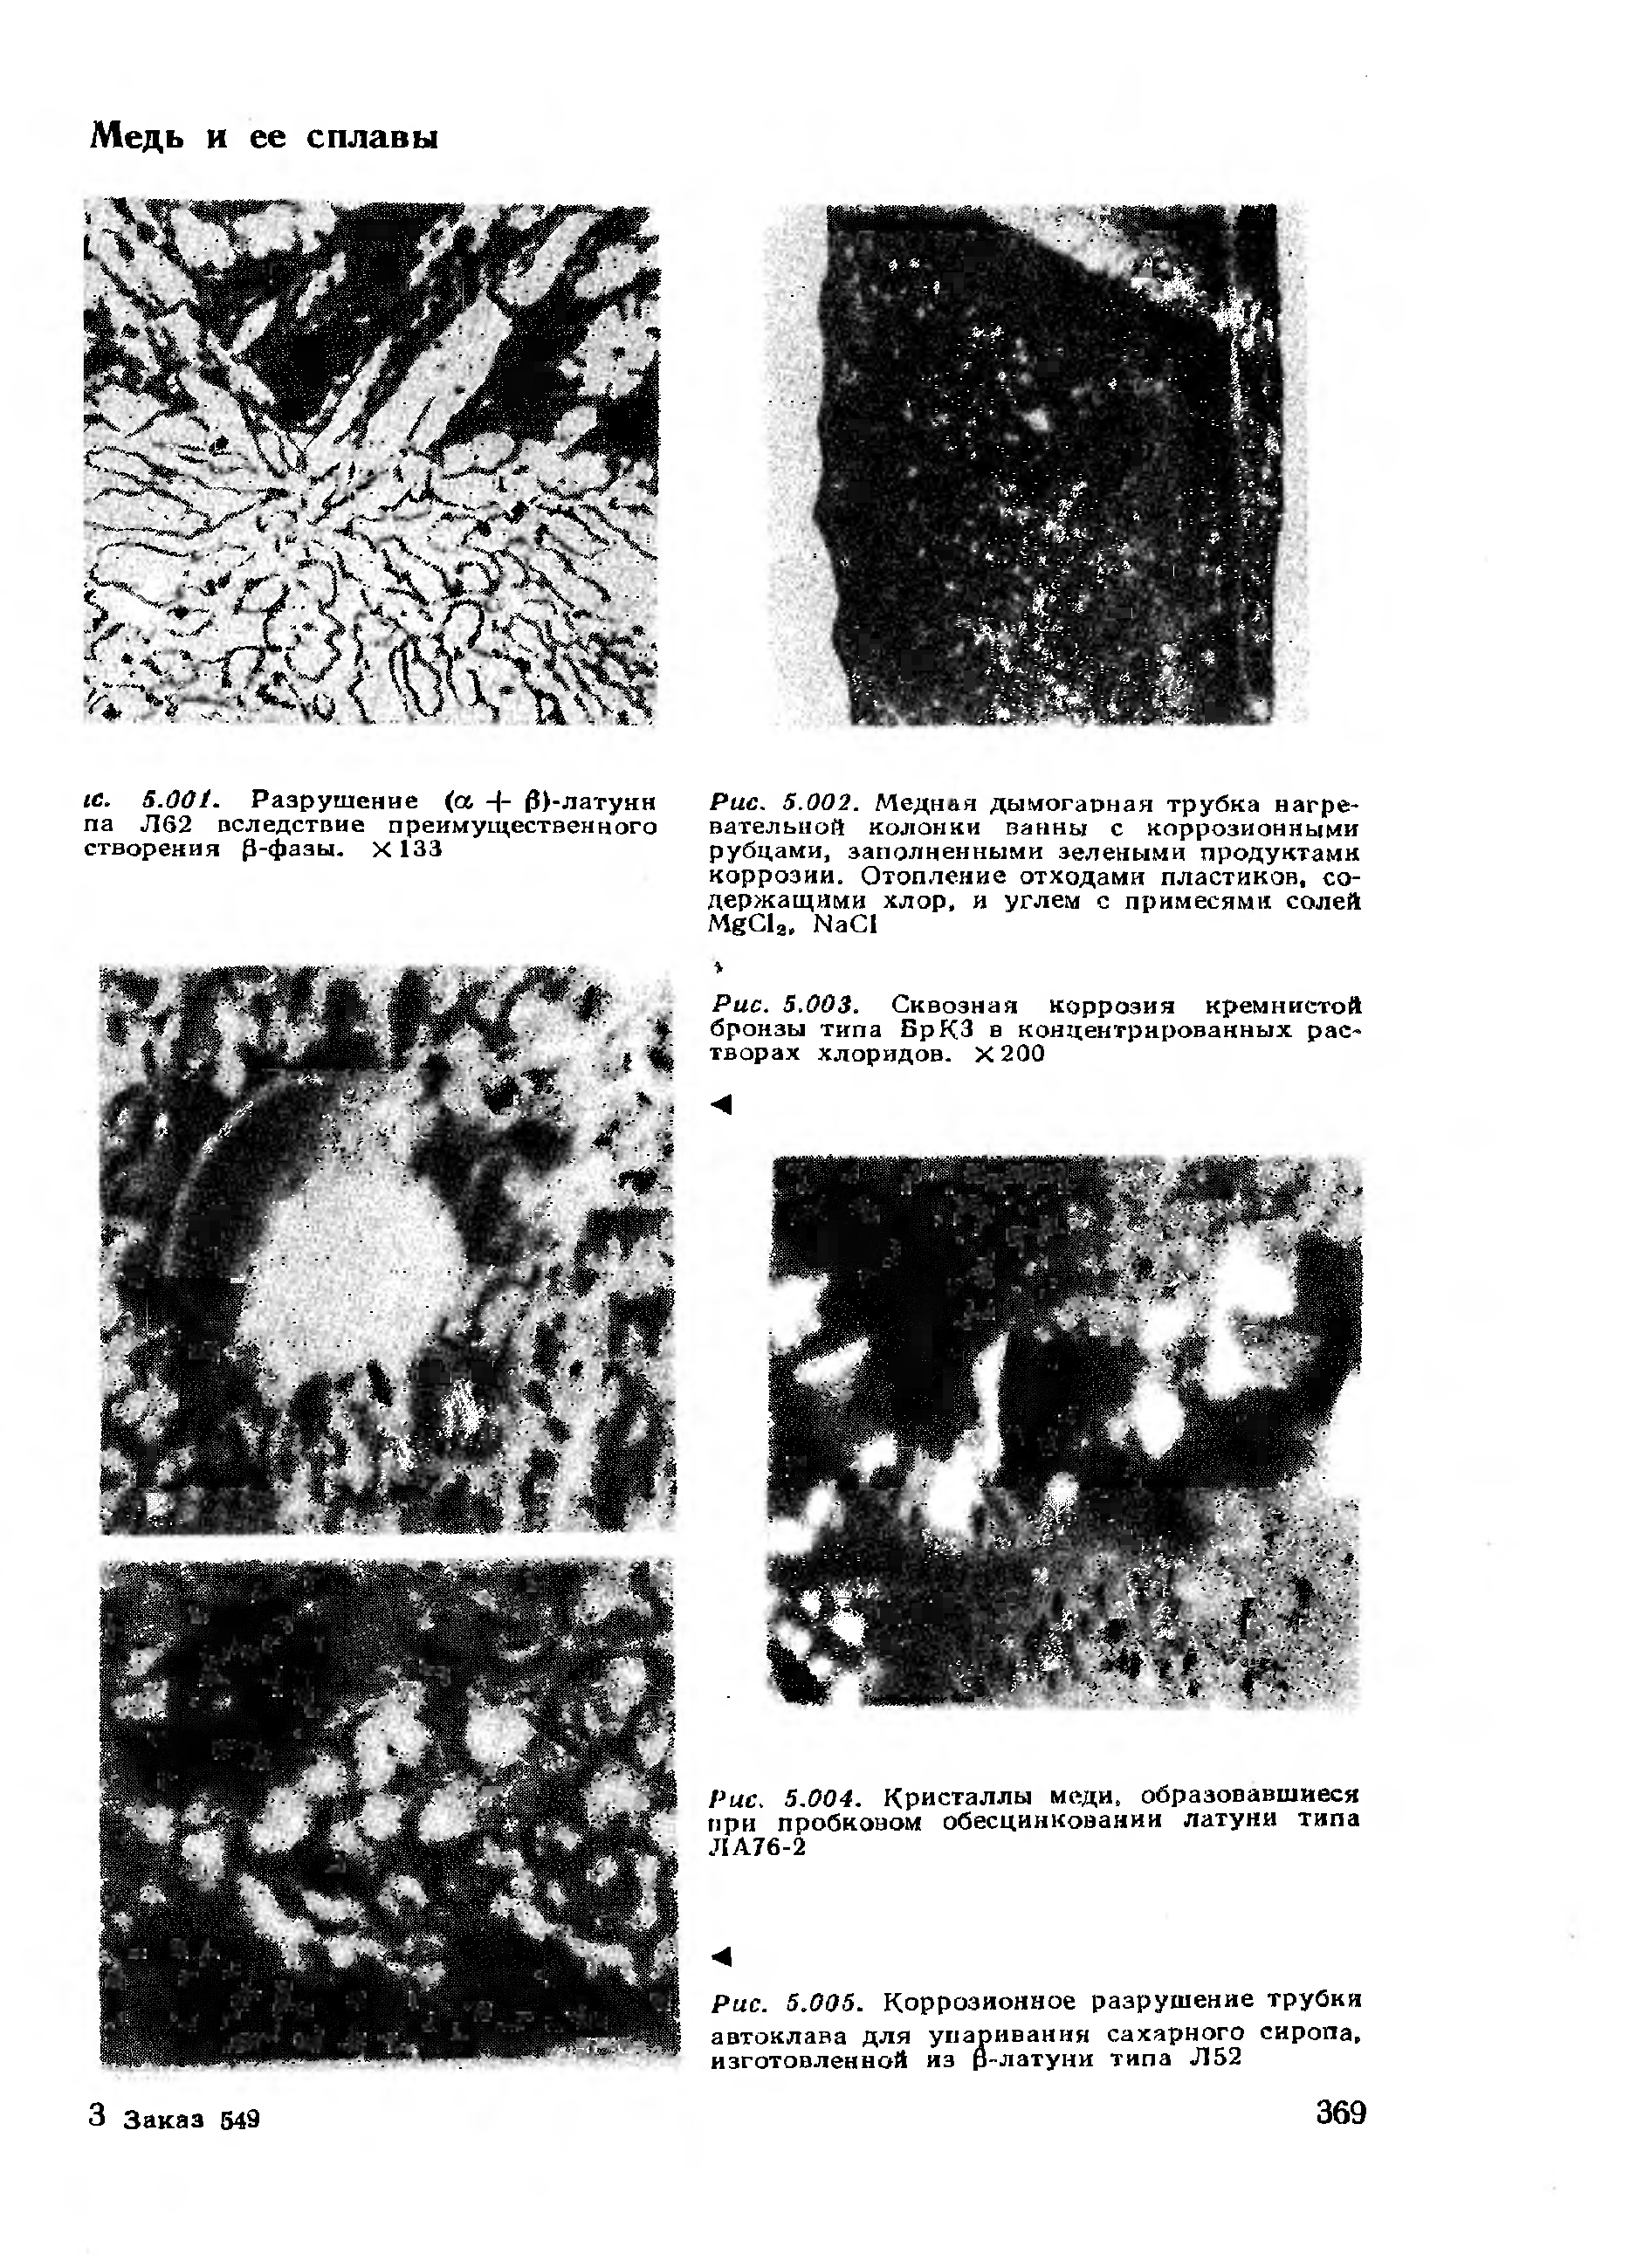 Рис. 5.004. Кристаллы меди, образовавшиеся при пробковом обесцинковании латуни типа ЛА76-2
